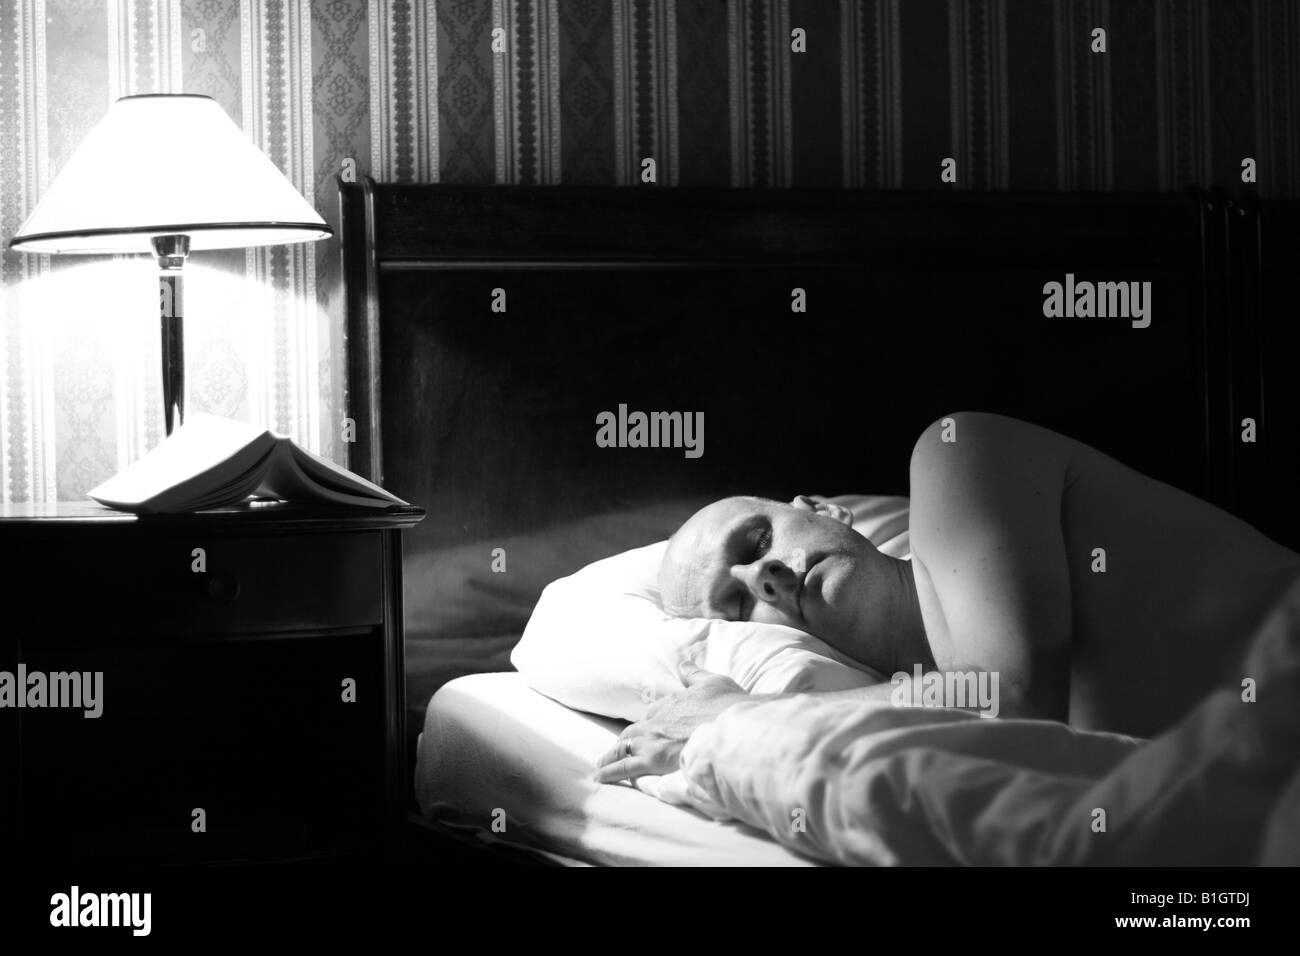 Mann im Alter von 40 Jahren schlafen im Hotel Bett Schlafzimmer mit Leselicht auf und Buch auf dem Nachttisch Stockfoto